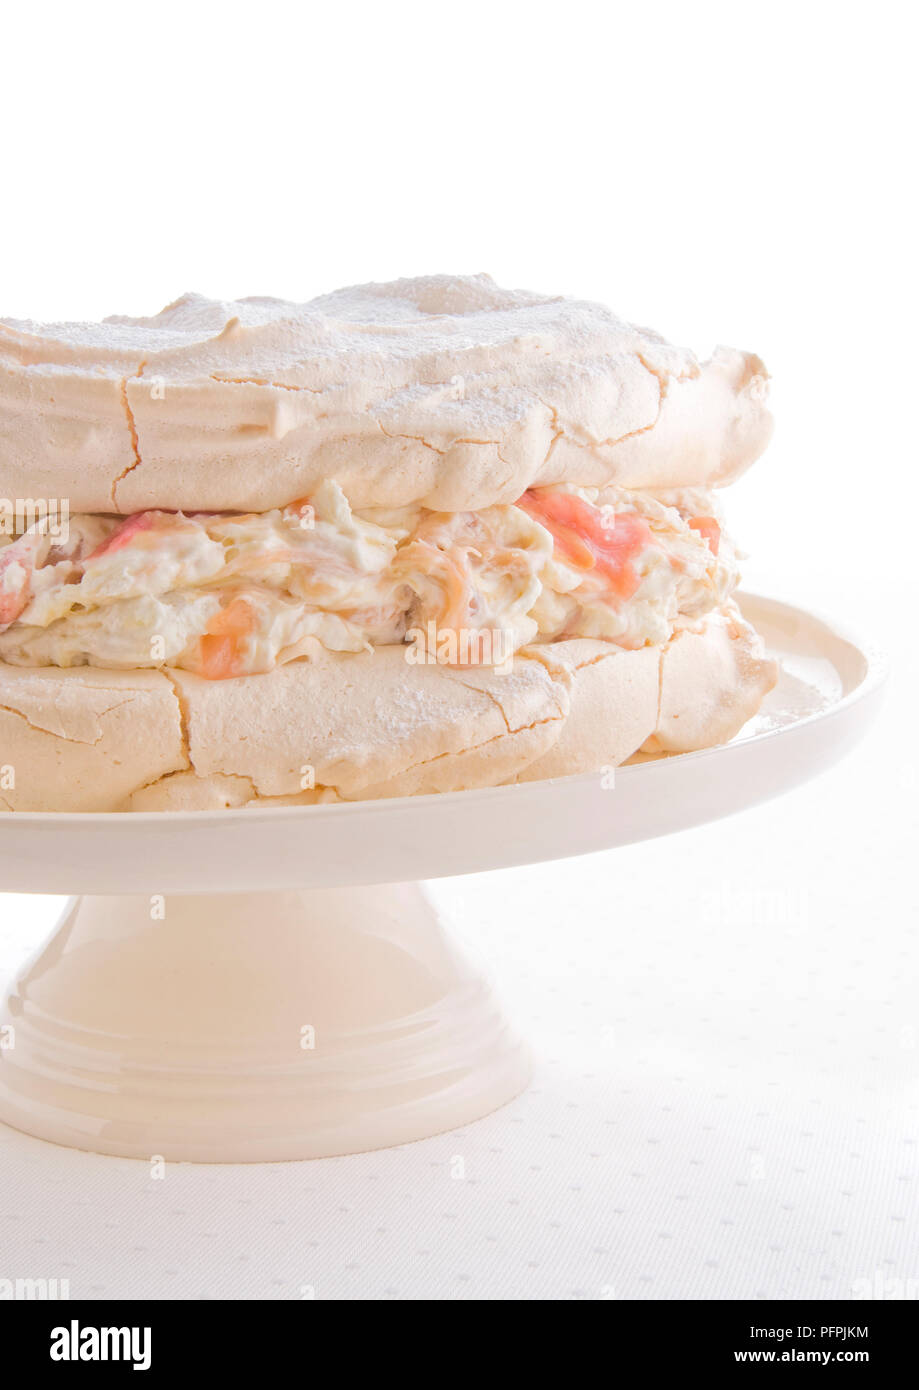 Rhabarber und Ingwer meringue auf einem Kuchen stand Stockfoto